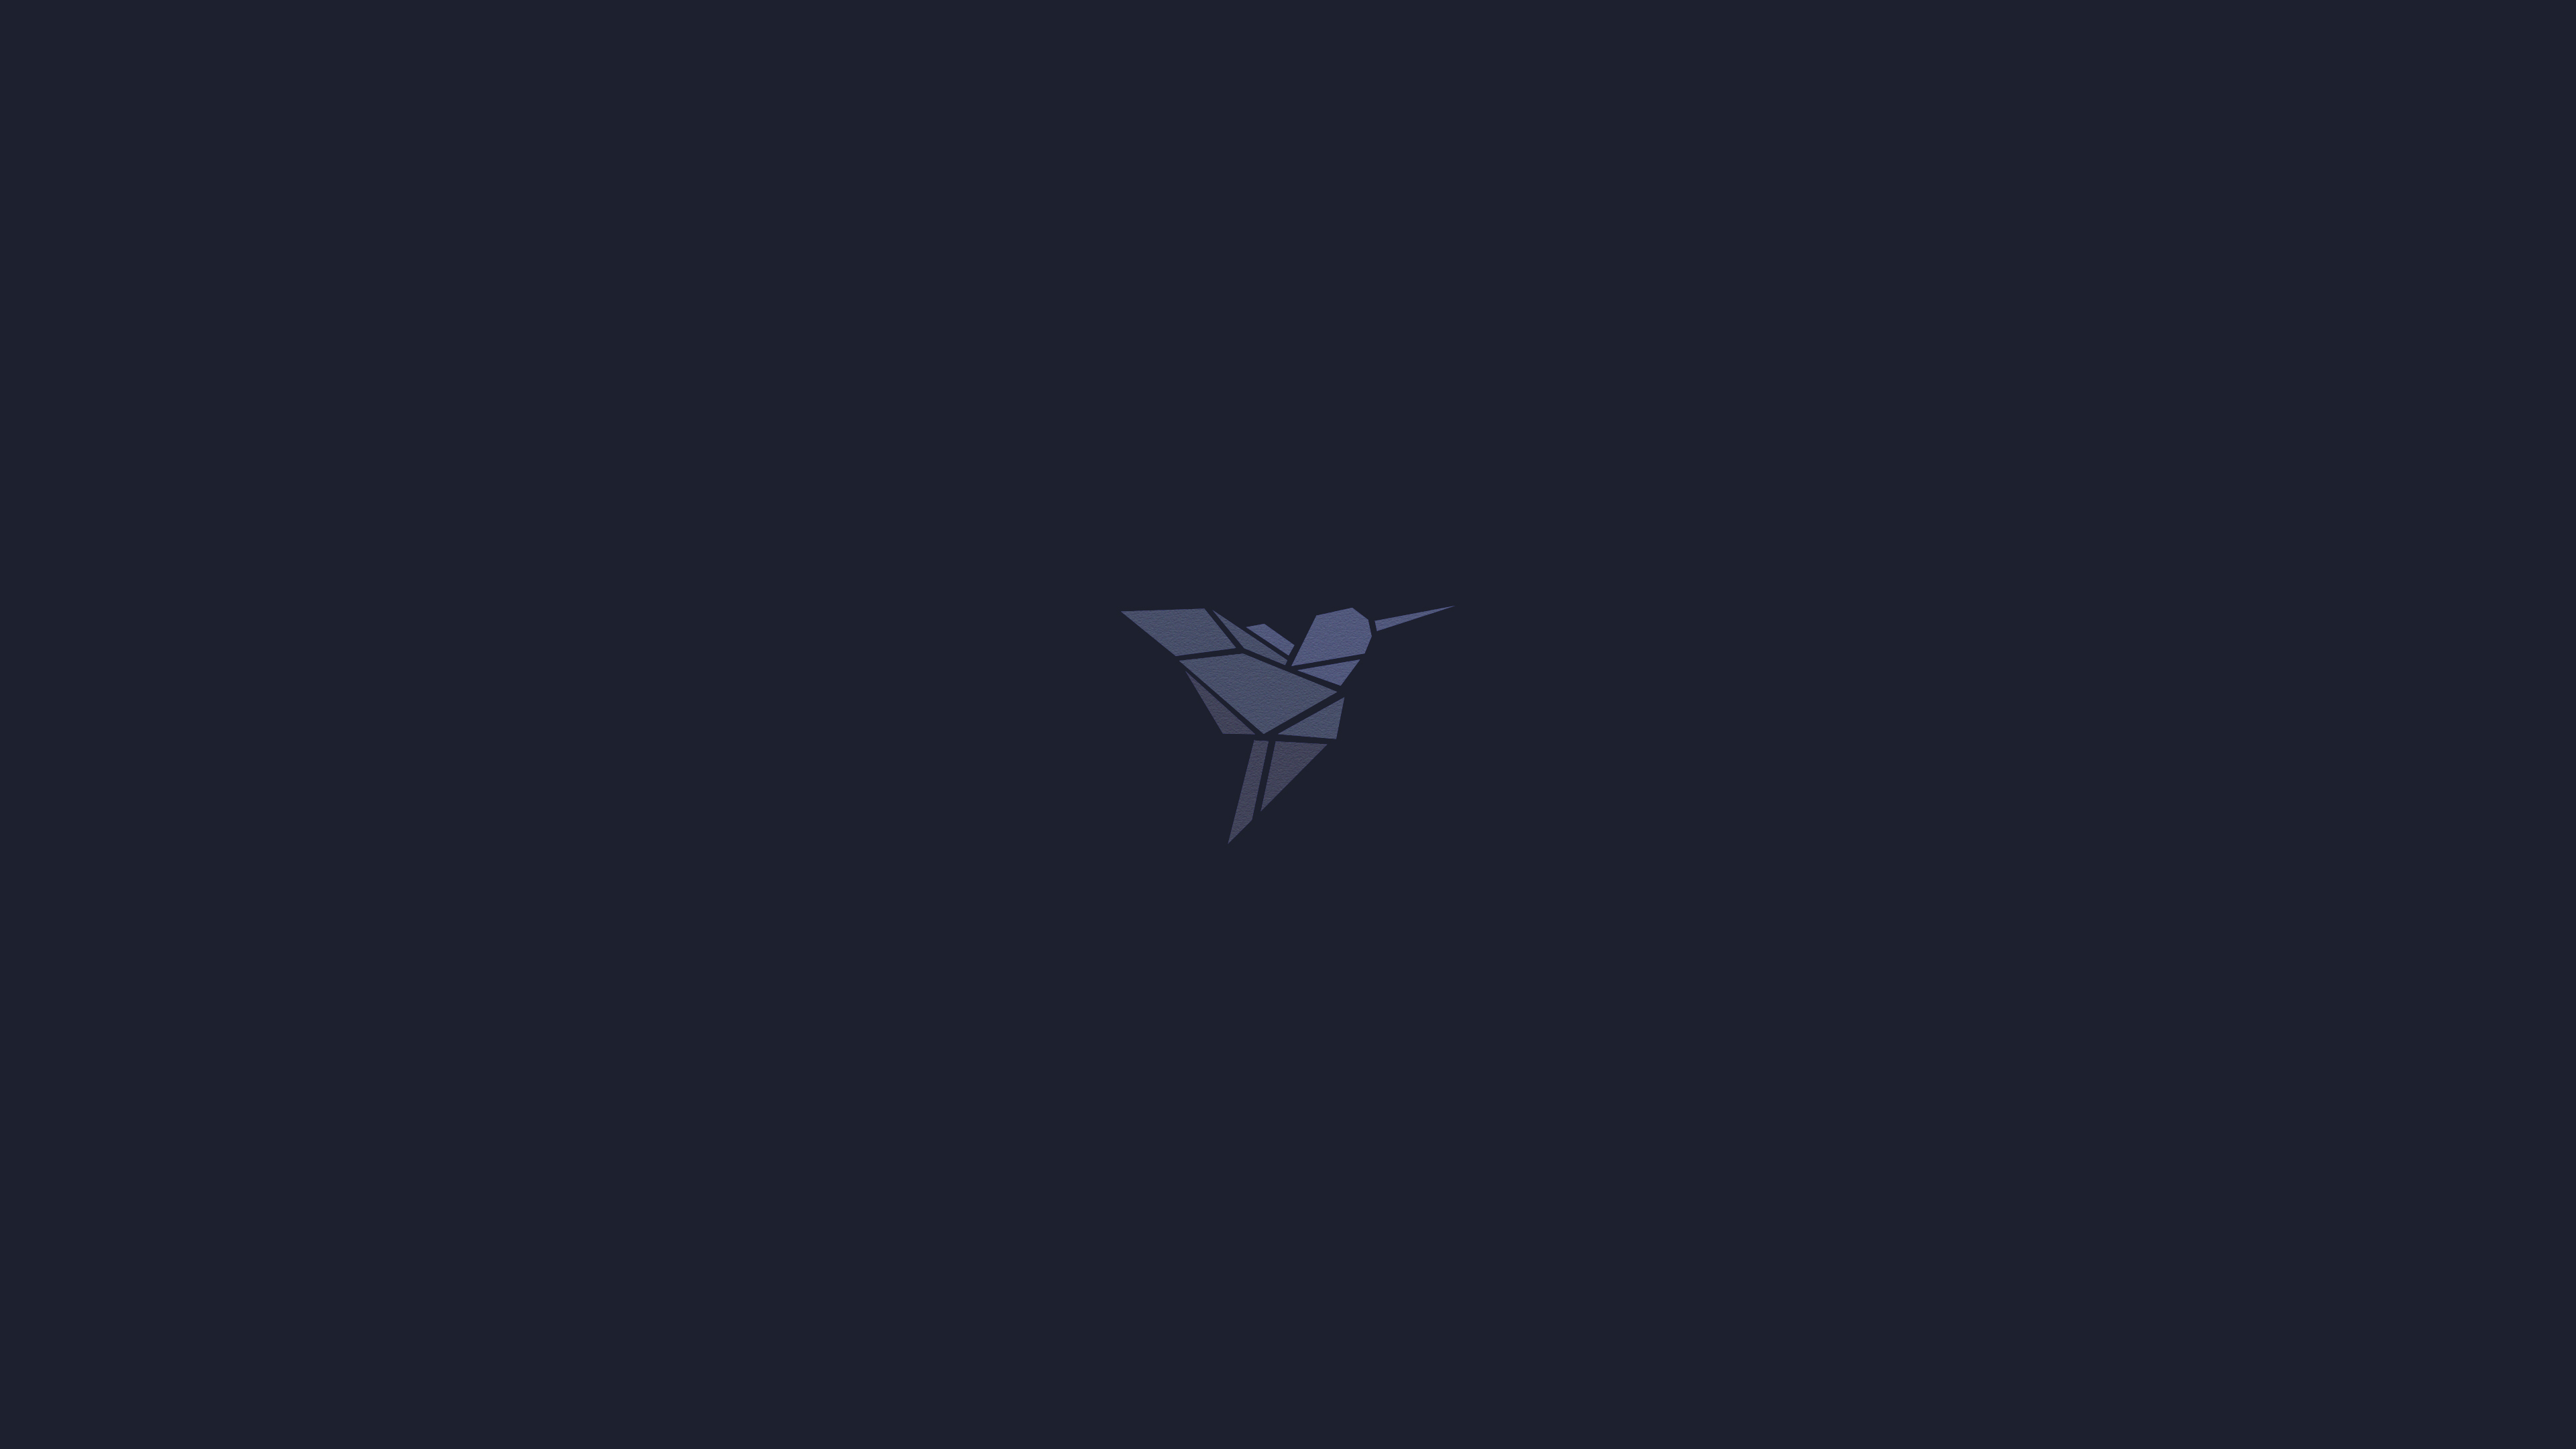 General 3840x2160 dark minimalism blue blue background hummingbirds simple background animals birds